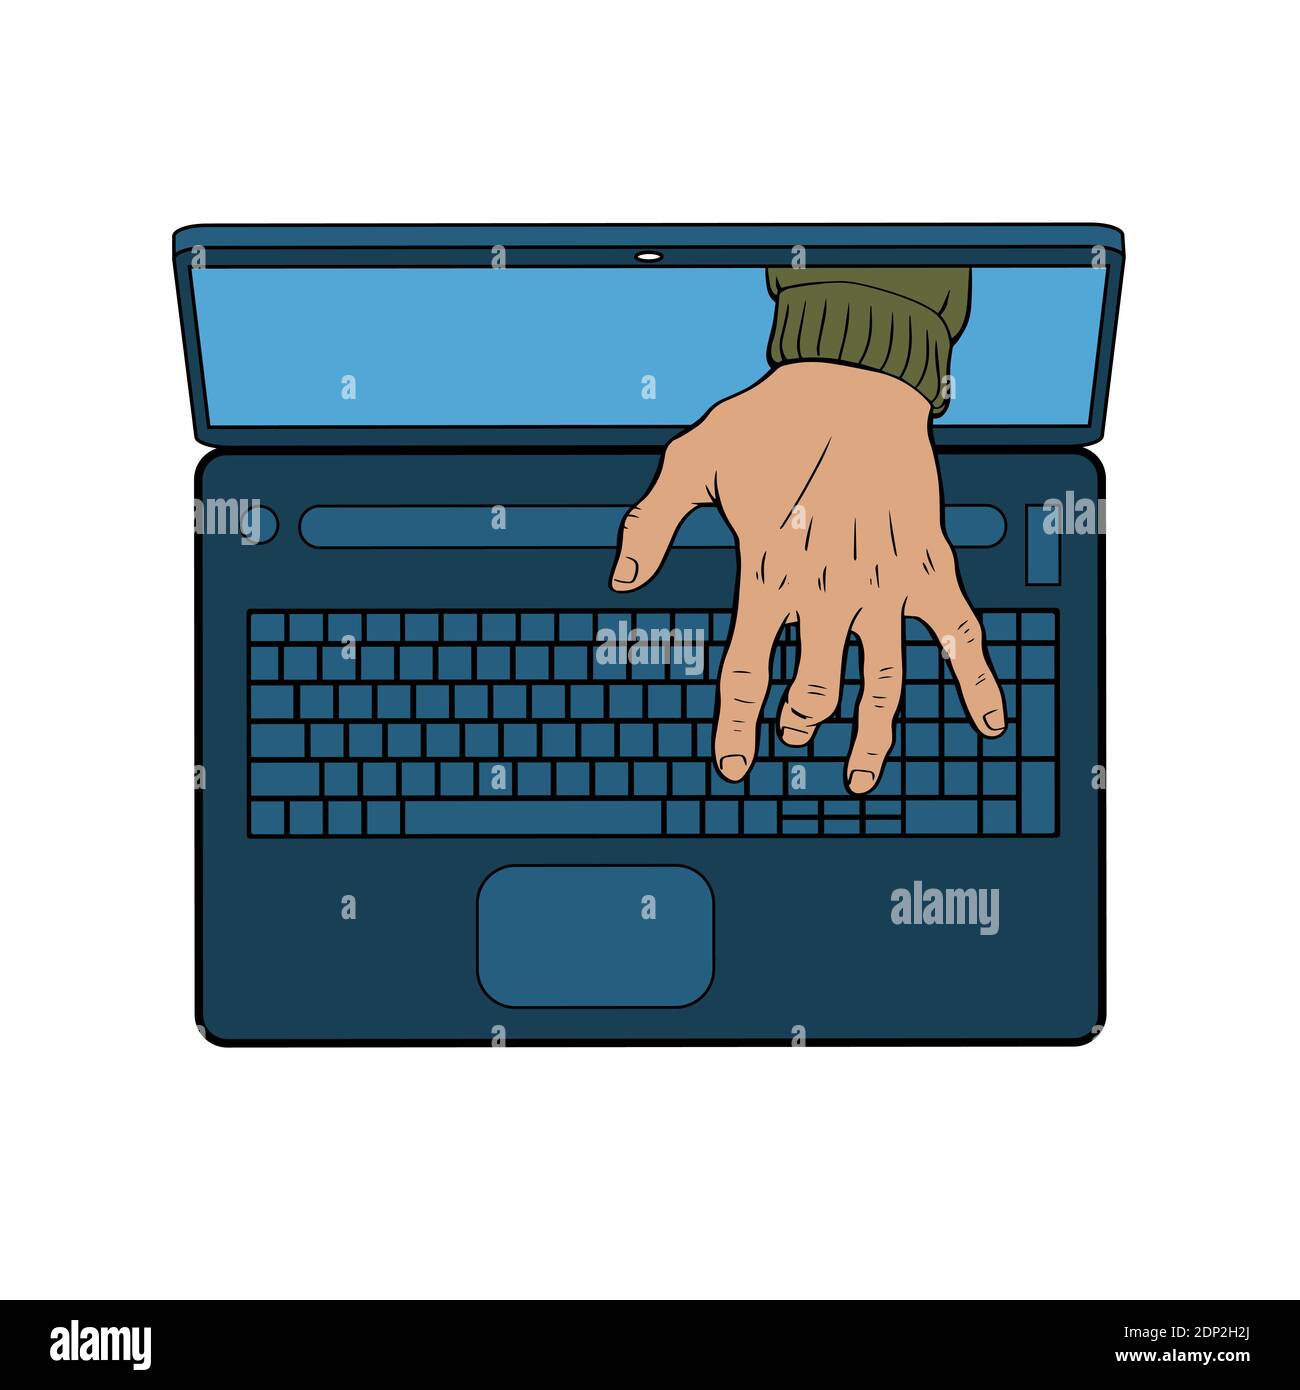 Ein Hacker bricht in einen Computer ein. Männliche Handtypen auf der Laptop-Tastatur. Vektor-isolierte Illustration. Stock Vektor